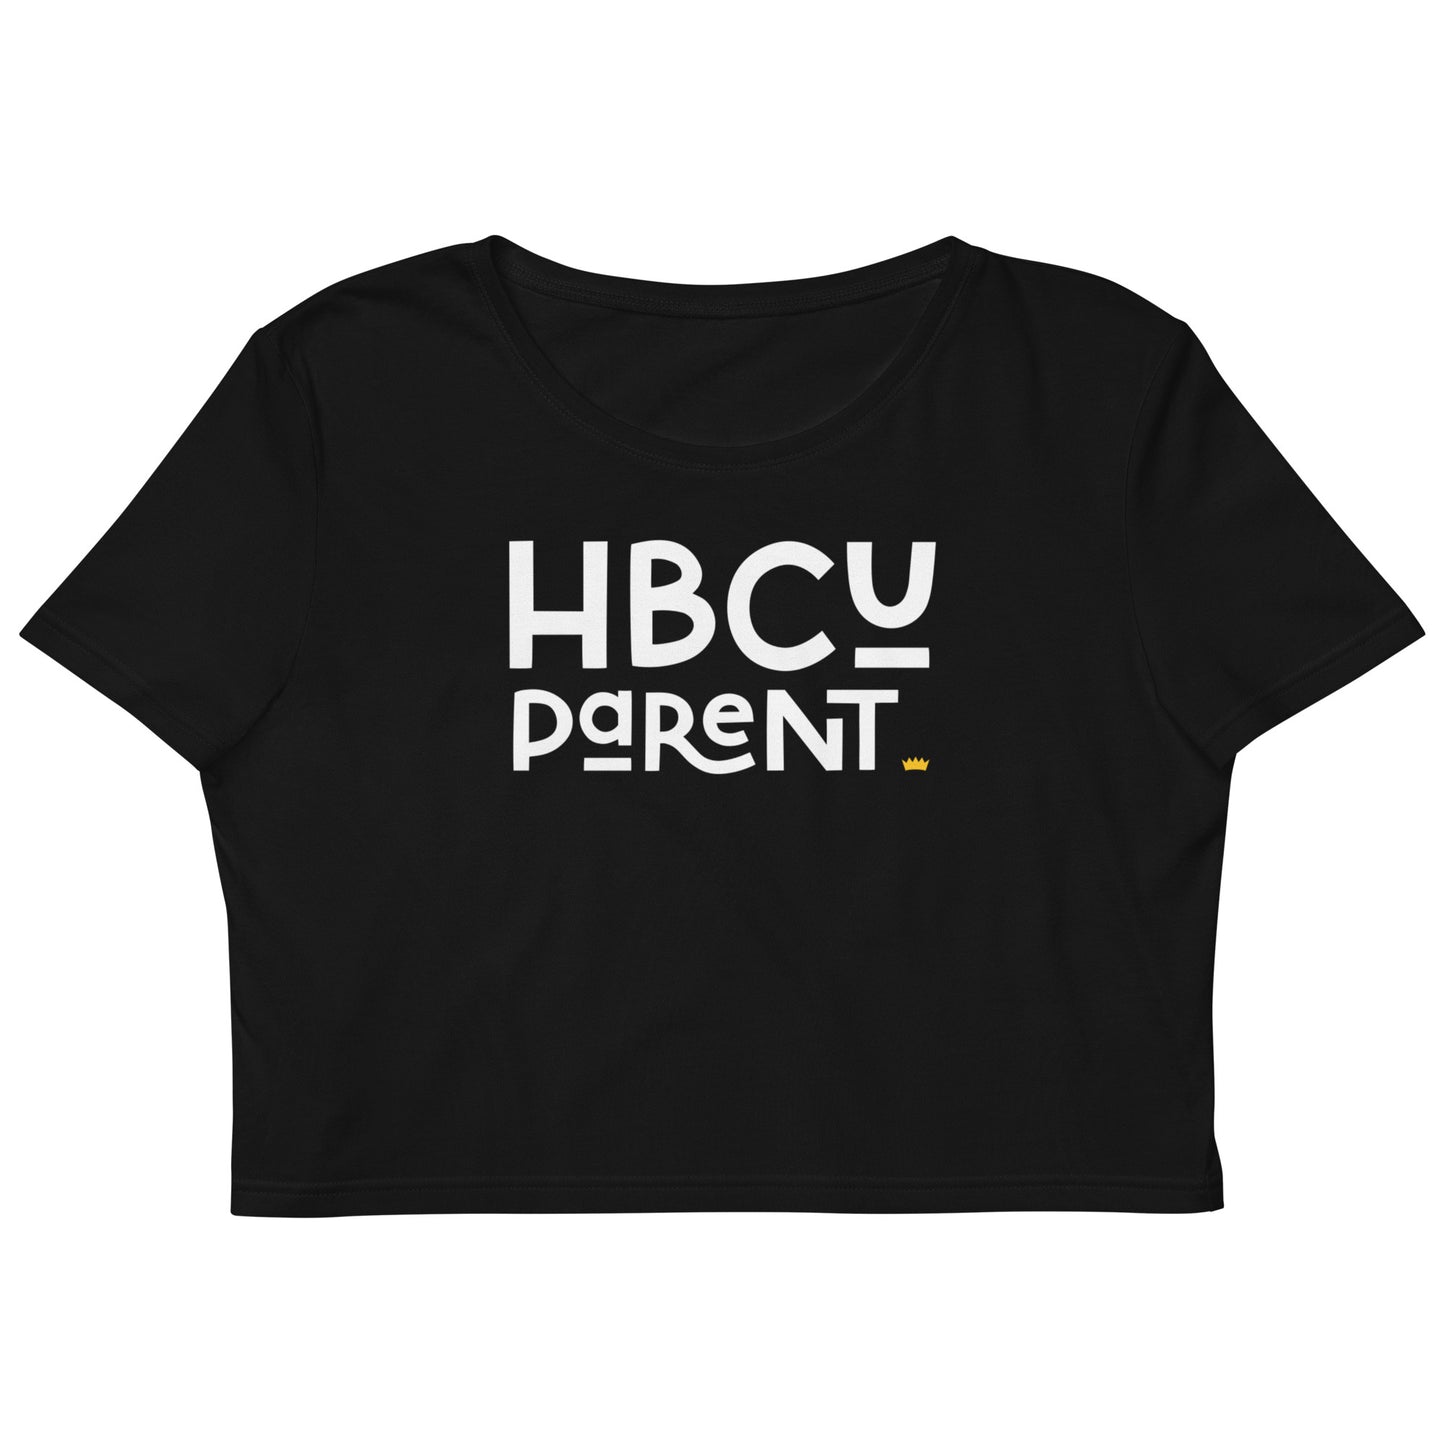 Parent - HBCU Organic Crop Top